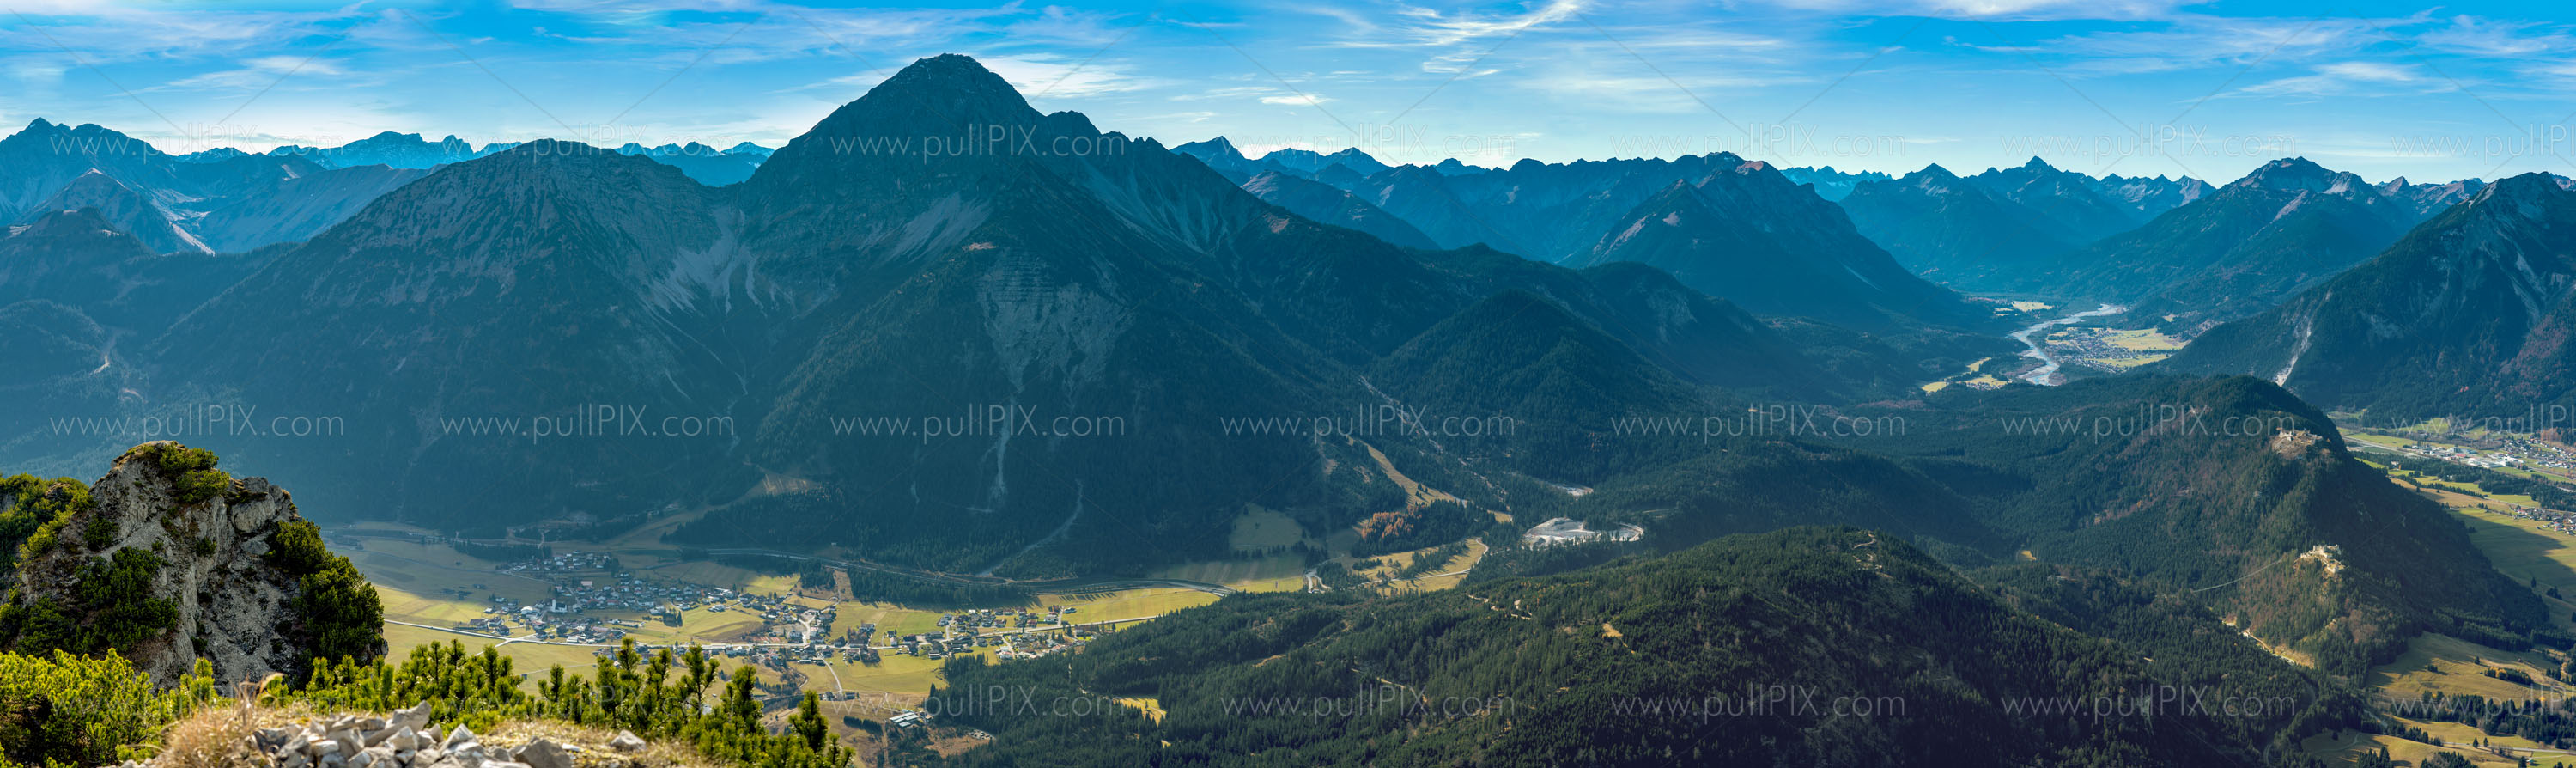 Preview Herbstliches Tirol.jpg